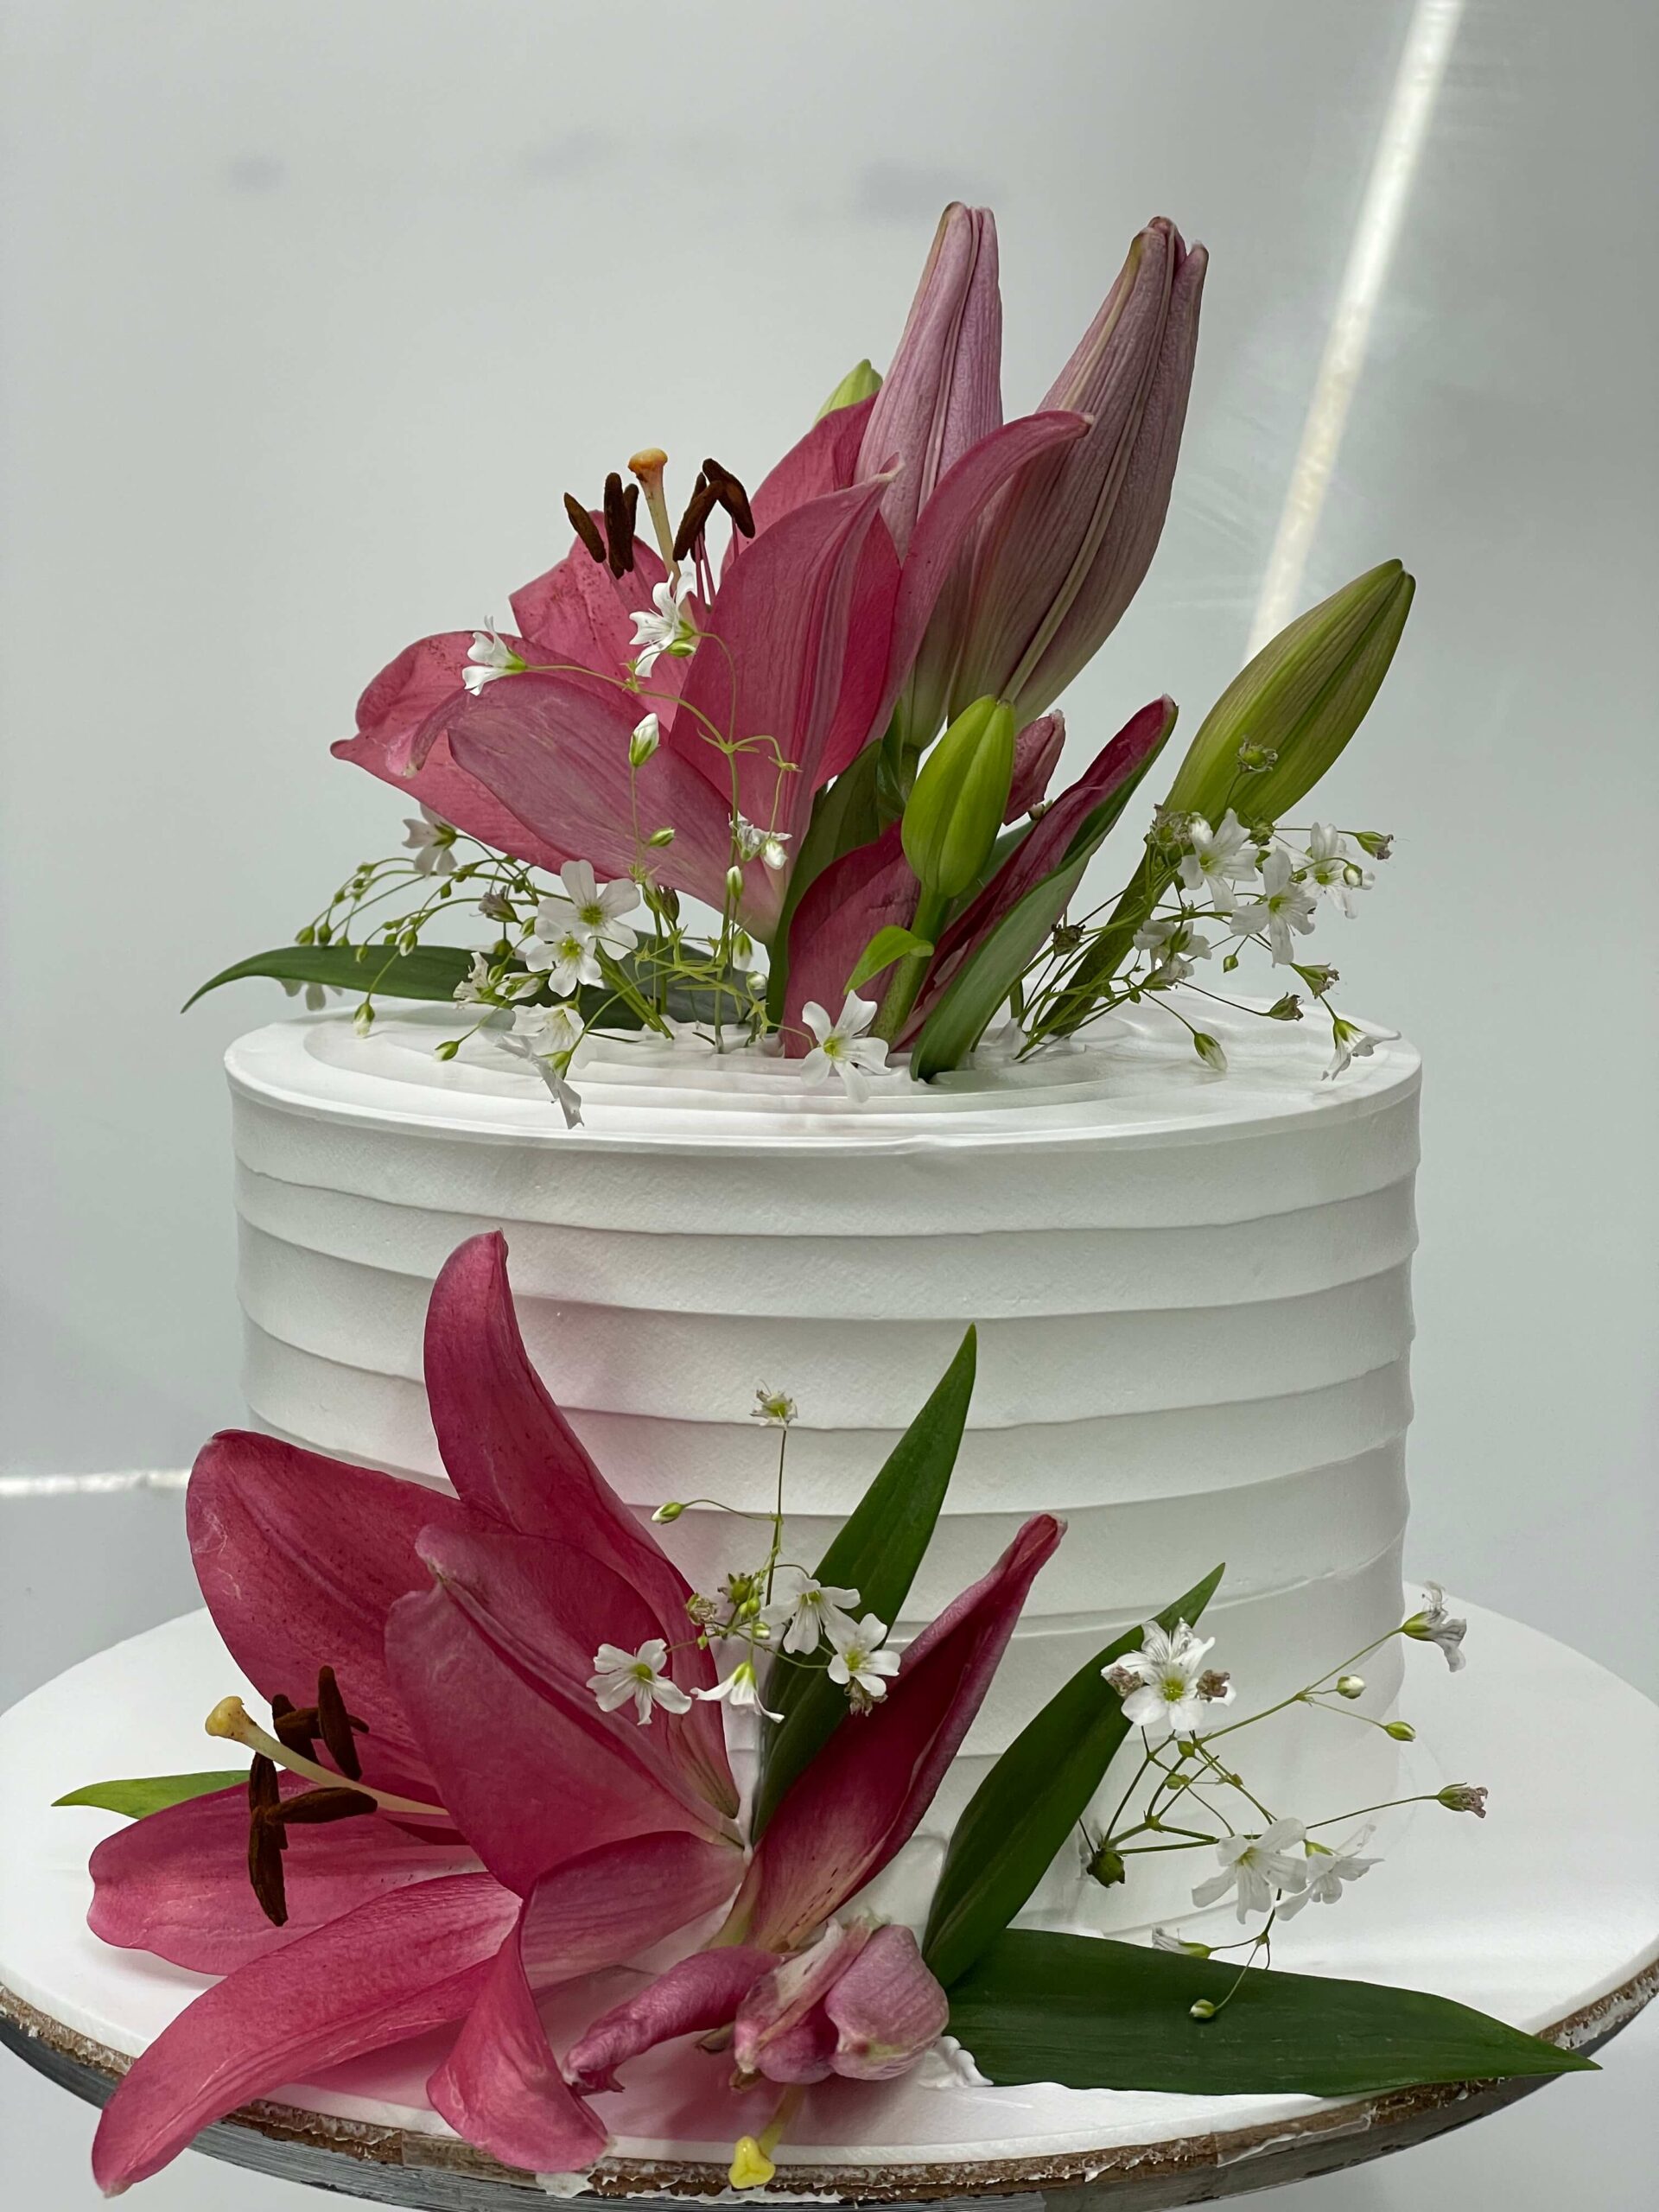 Elegant Cream Cake with Lillies